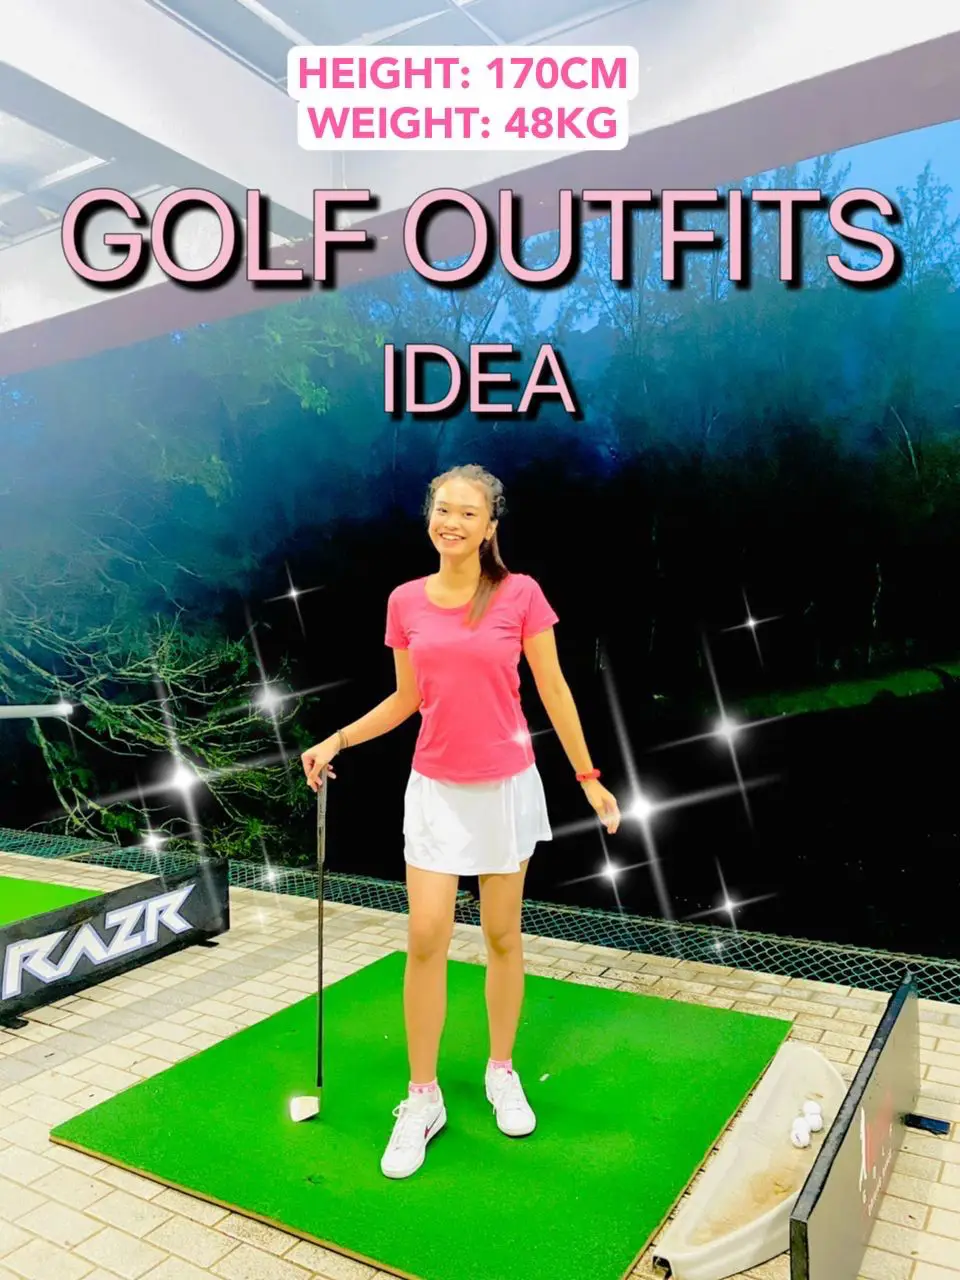 Golf outfits idea, Galeri disiarkan oleh adshaysmn